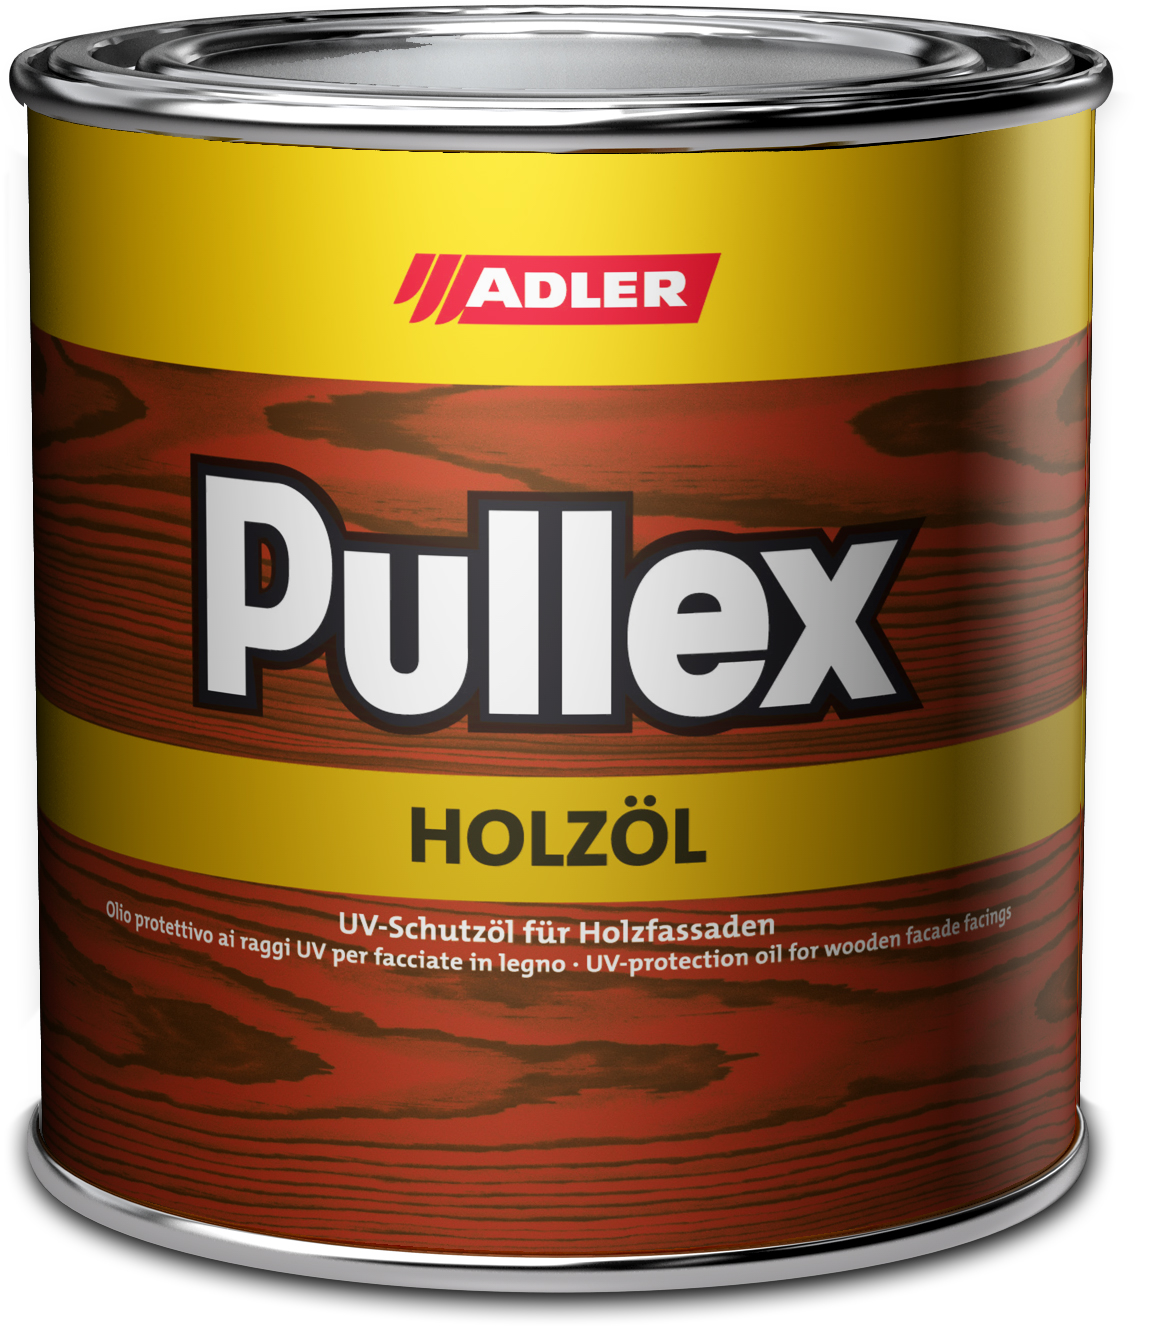 ADLER PULLEX HOLZÖL - UV ochranný olej na drevodomy a drevené obloženie LW 04/1 - whisper 2,5 L